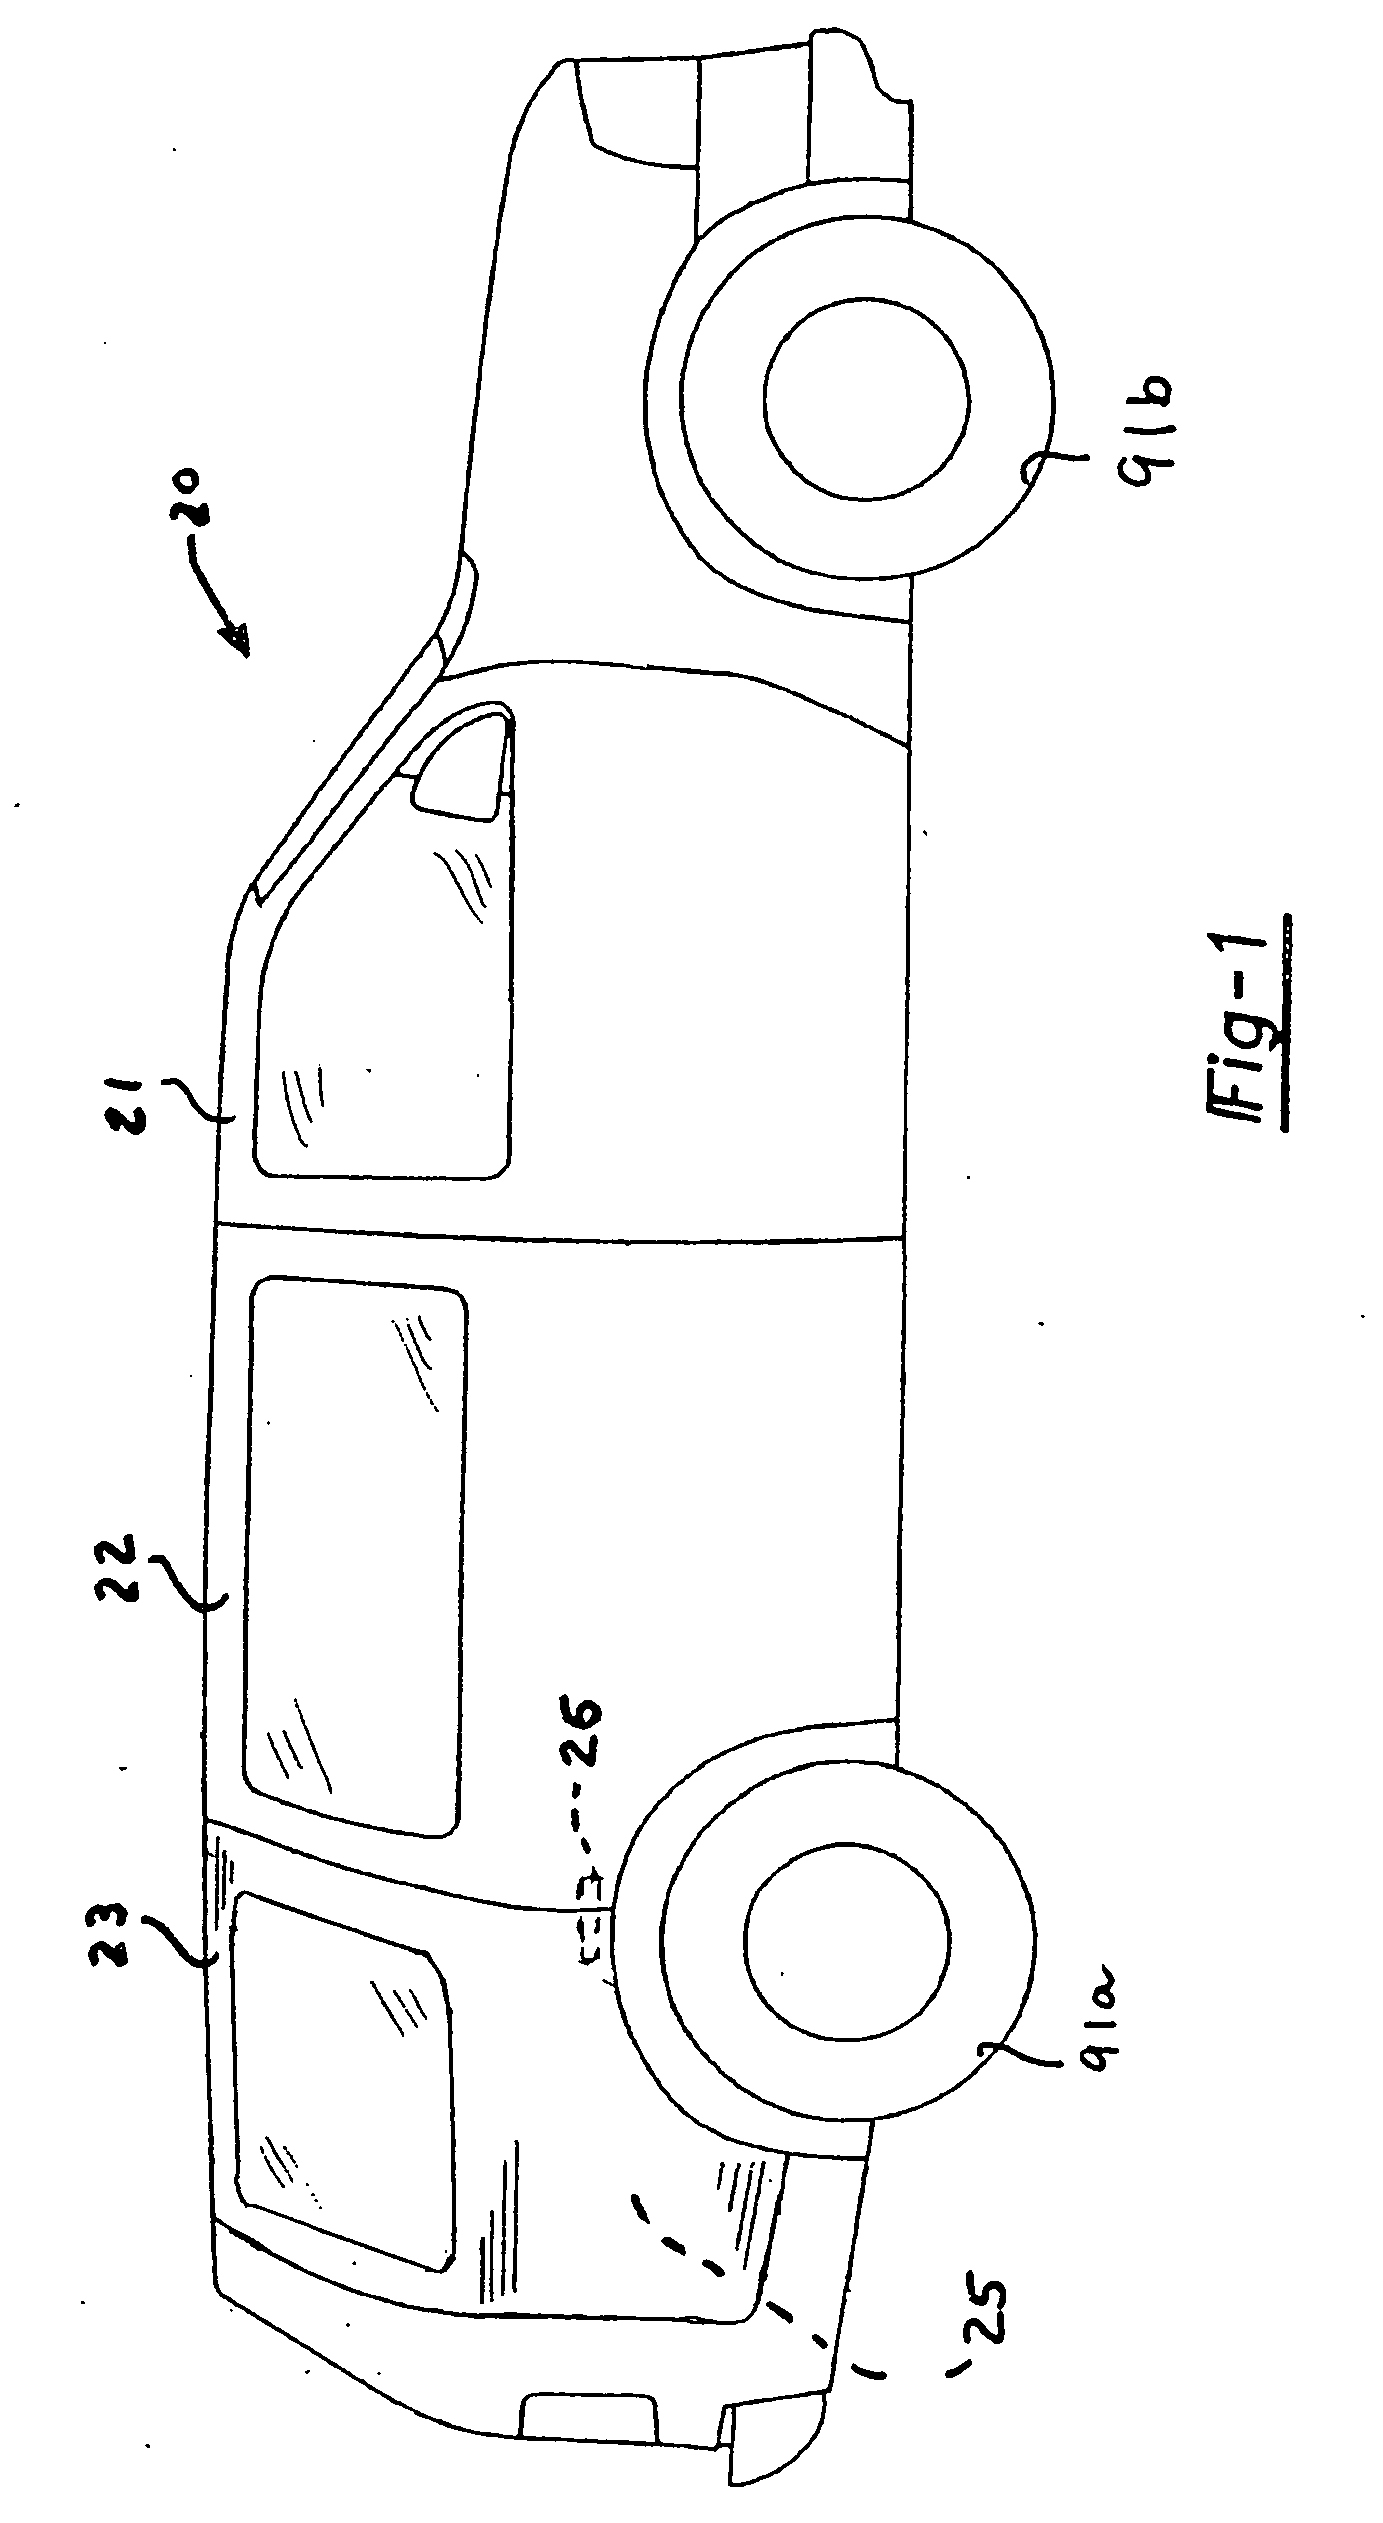 Vehicle openings